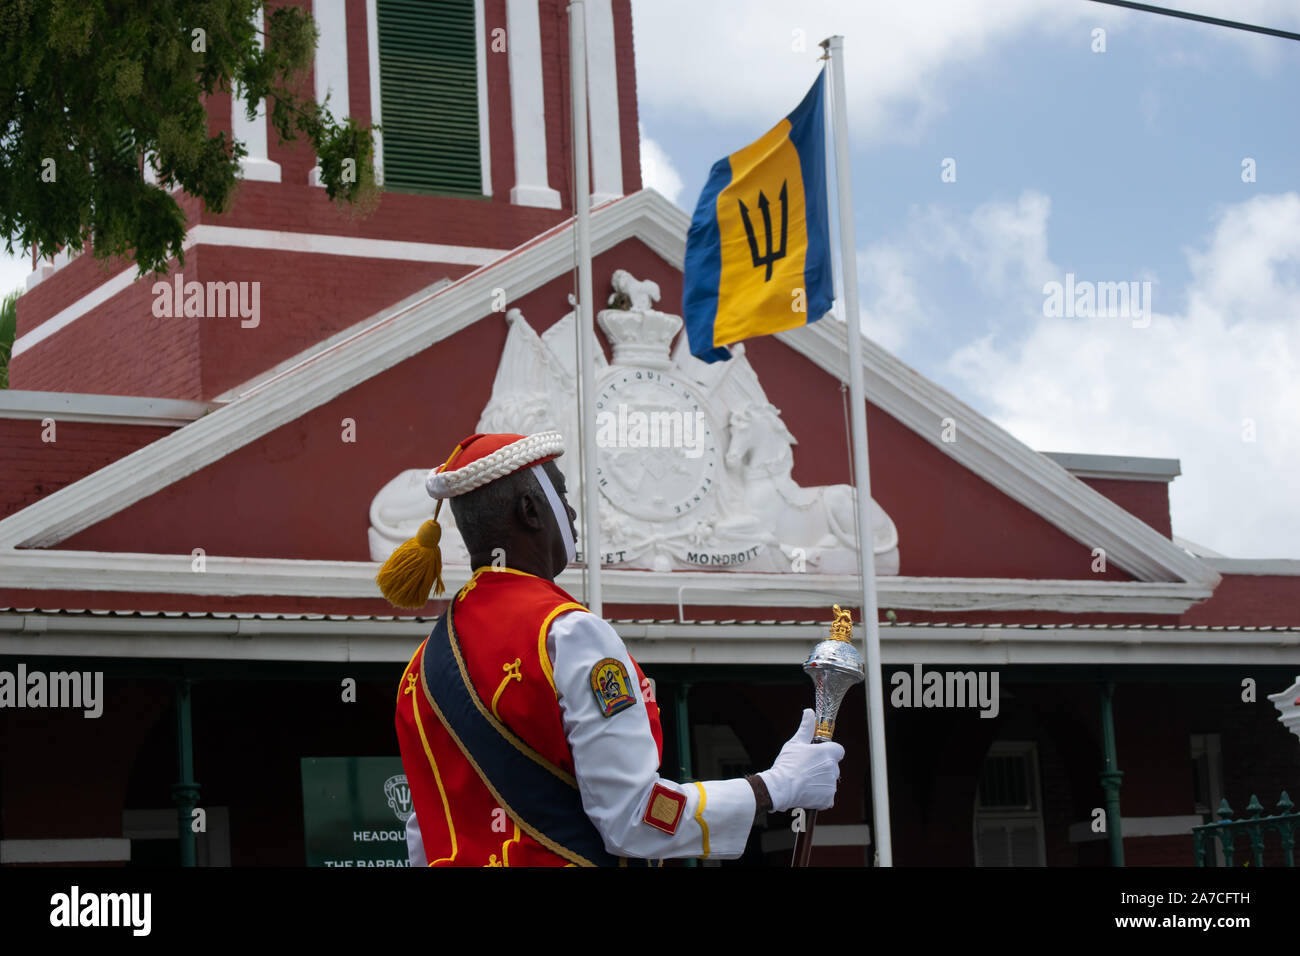 L'île de la Barbade relève de la garde au quartier historique de la garnison. Un soldat solitaire en face de la garnison avec le pavillon de la Barbade Banque D'Images